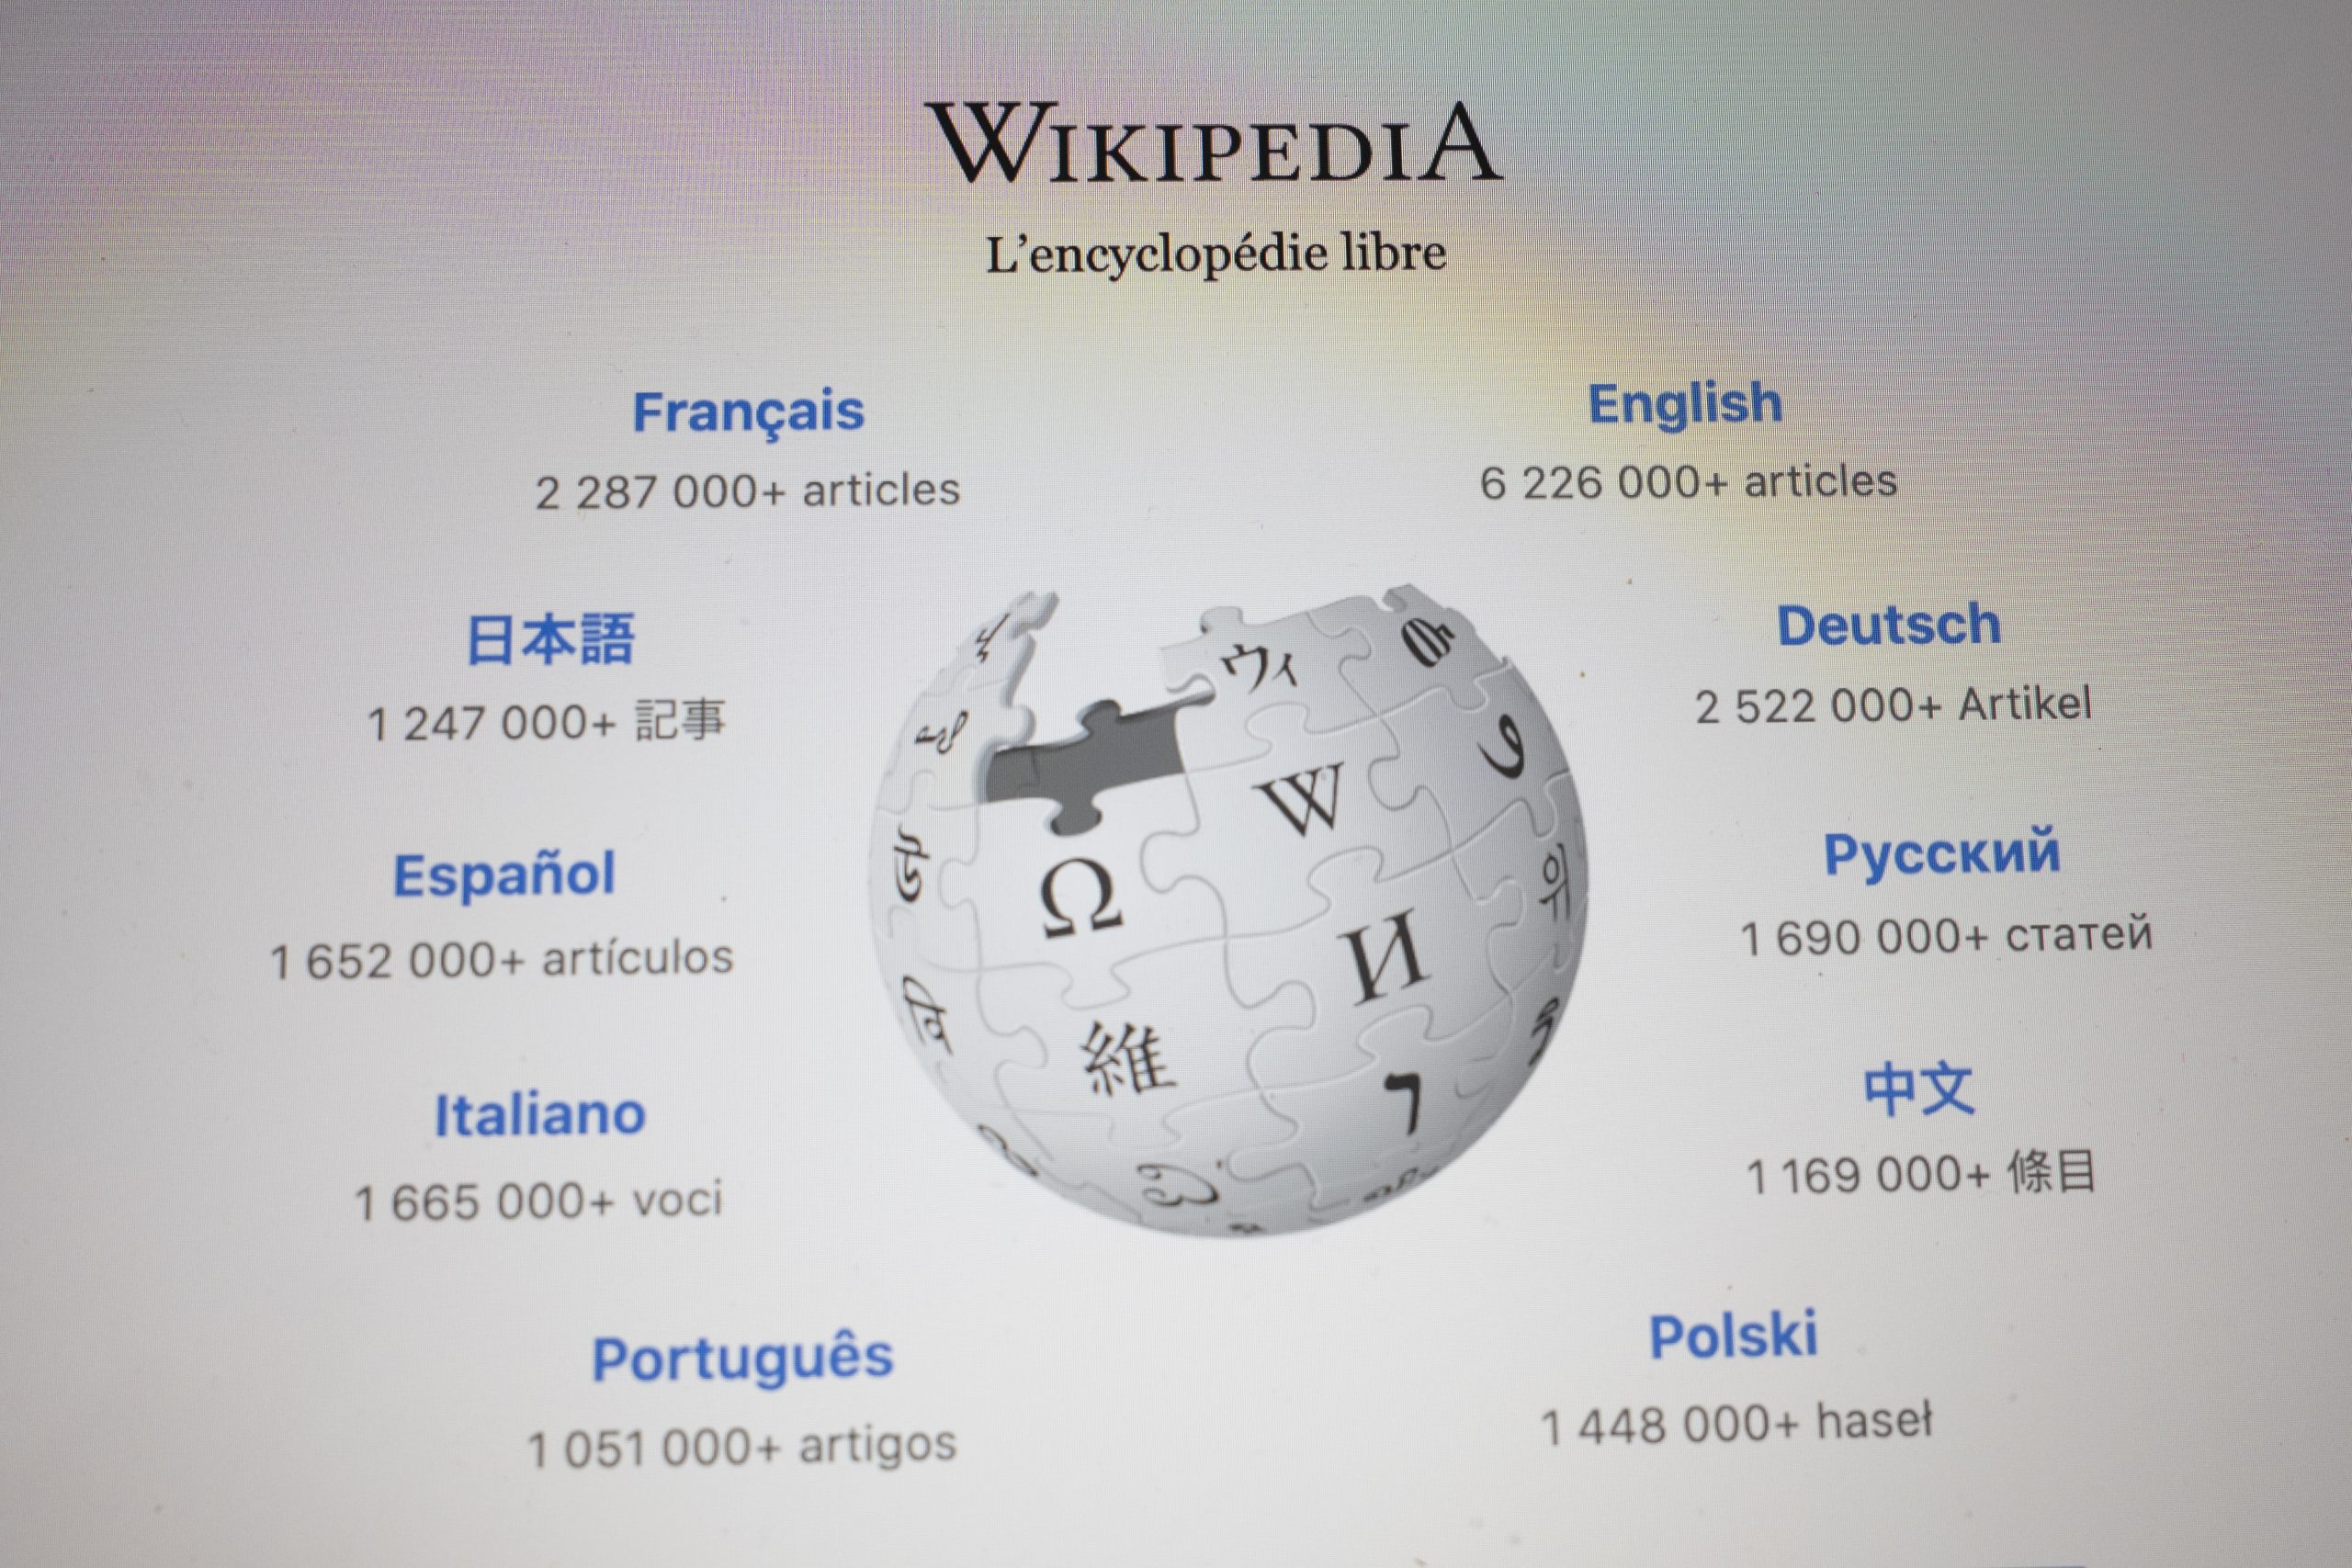 ¿Quién y por qué se puede editar la información de Wikipedia?